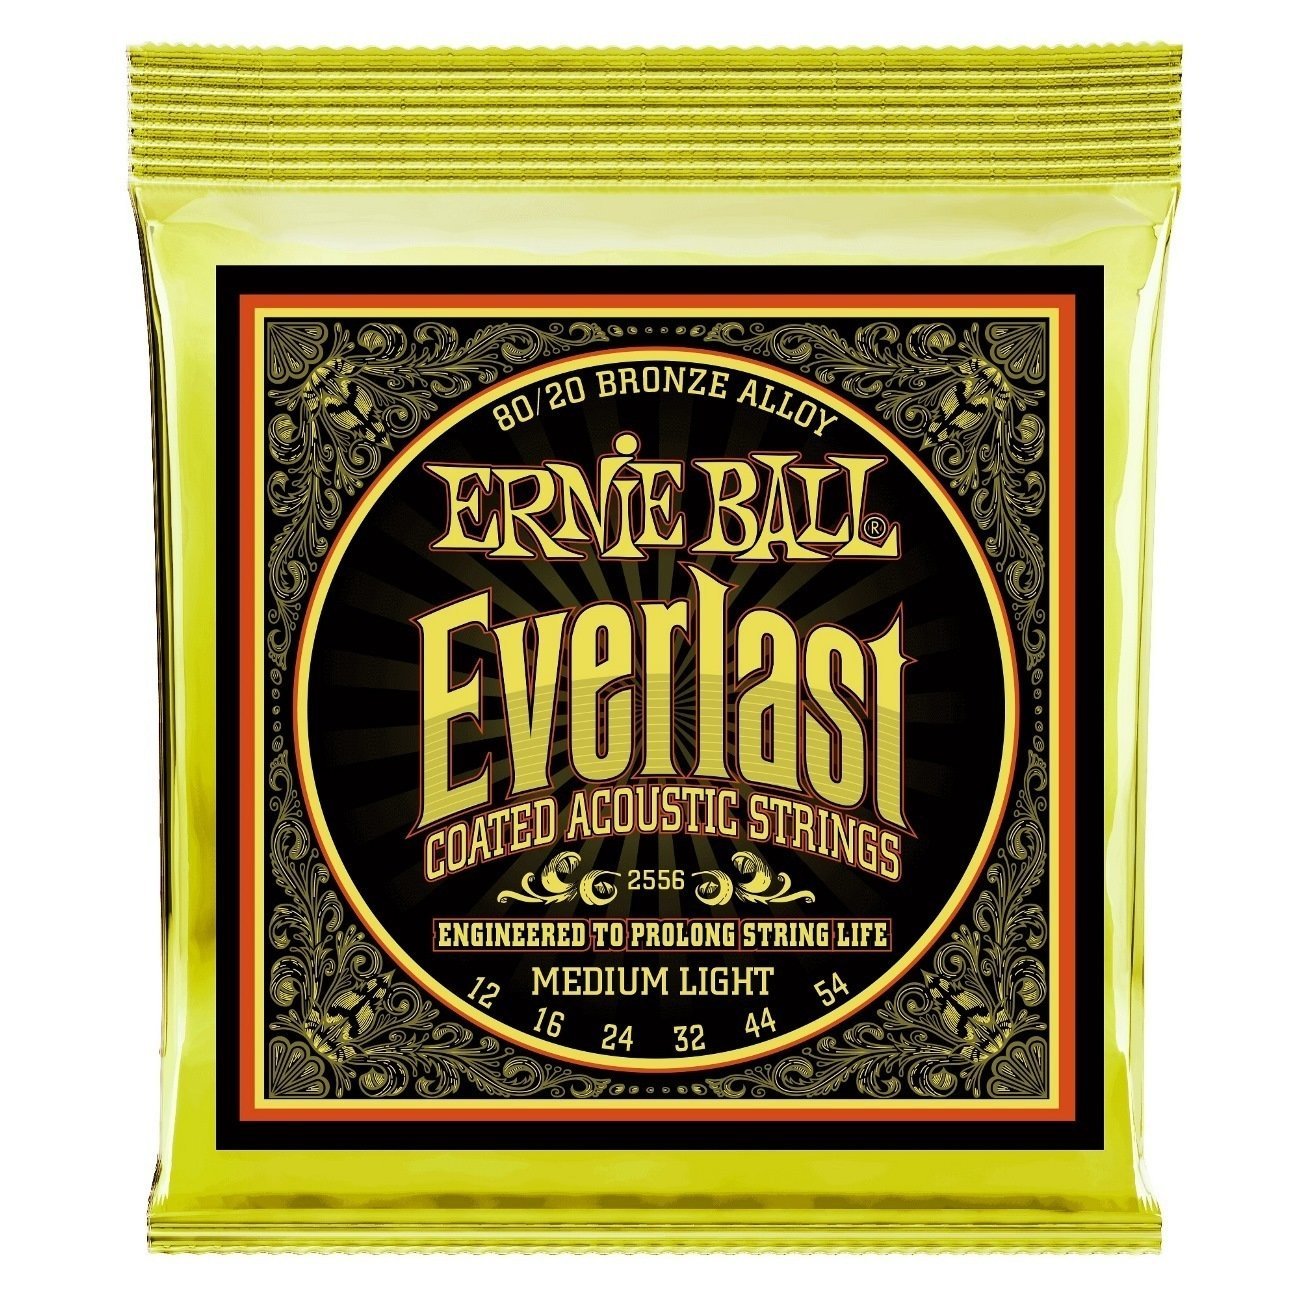 Akusztikus gitárhúrok Ernie Ball 2556 Everlast